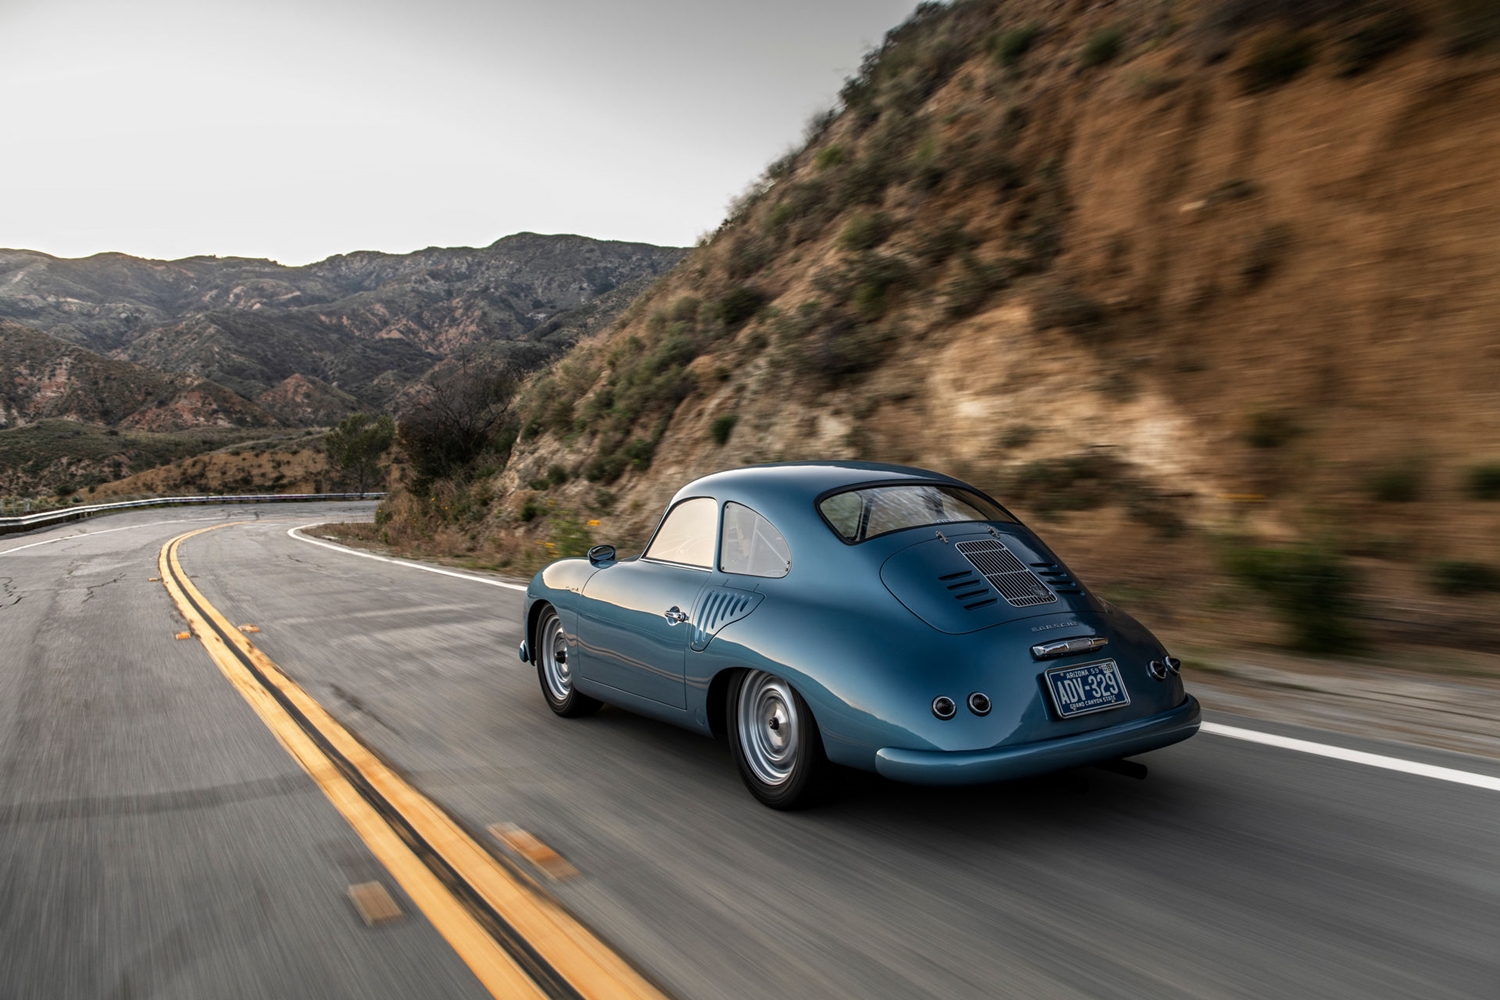 Korhű tuningnak néz ki, de ennél több van a kék 356-os Porsche mögött 3